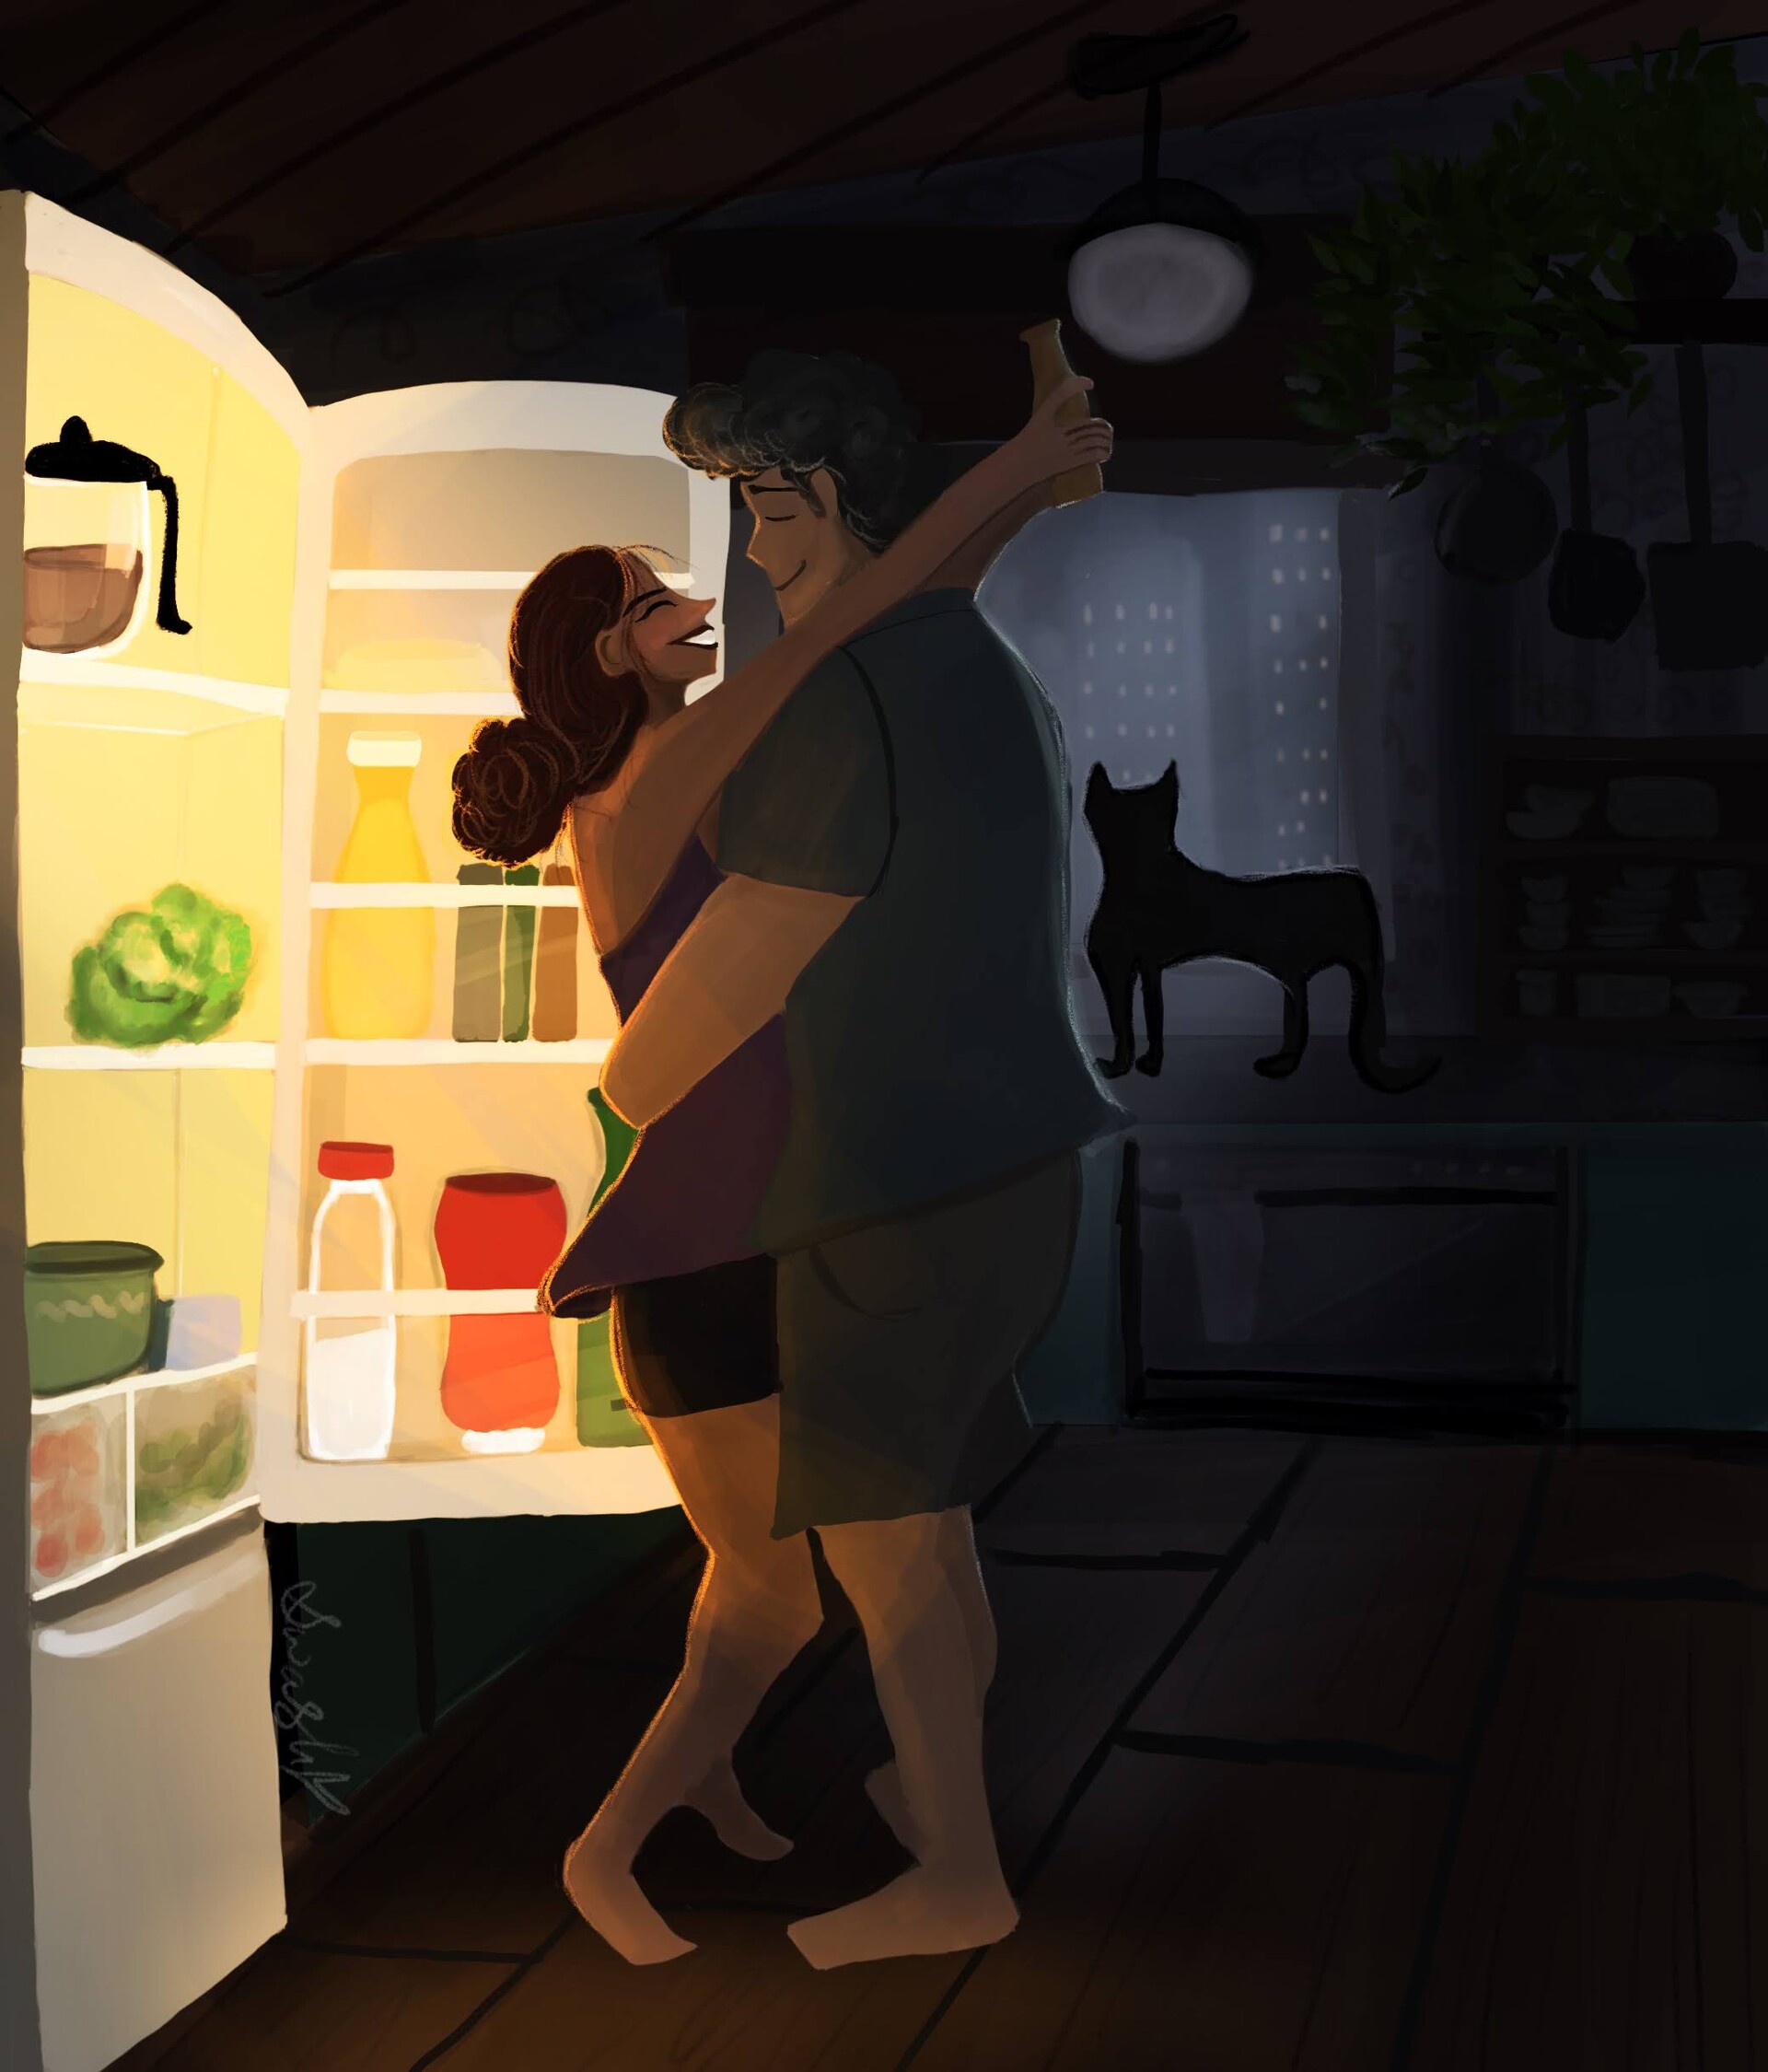 ArtStation - Dancing in the Refrigerator Light